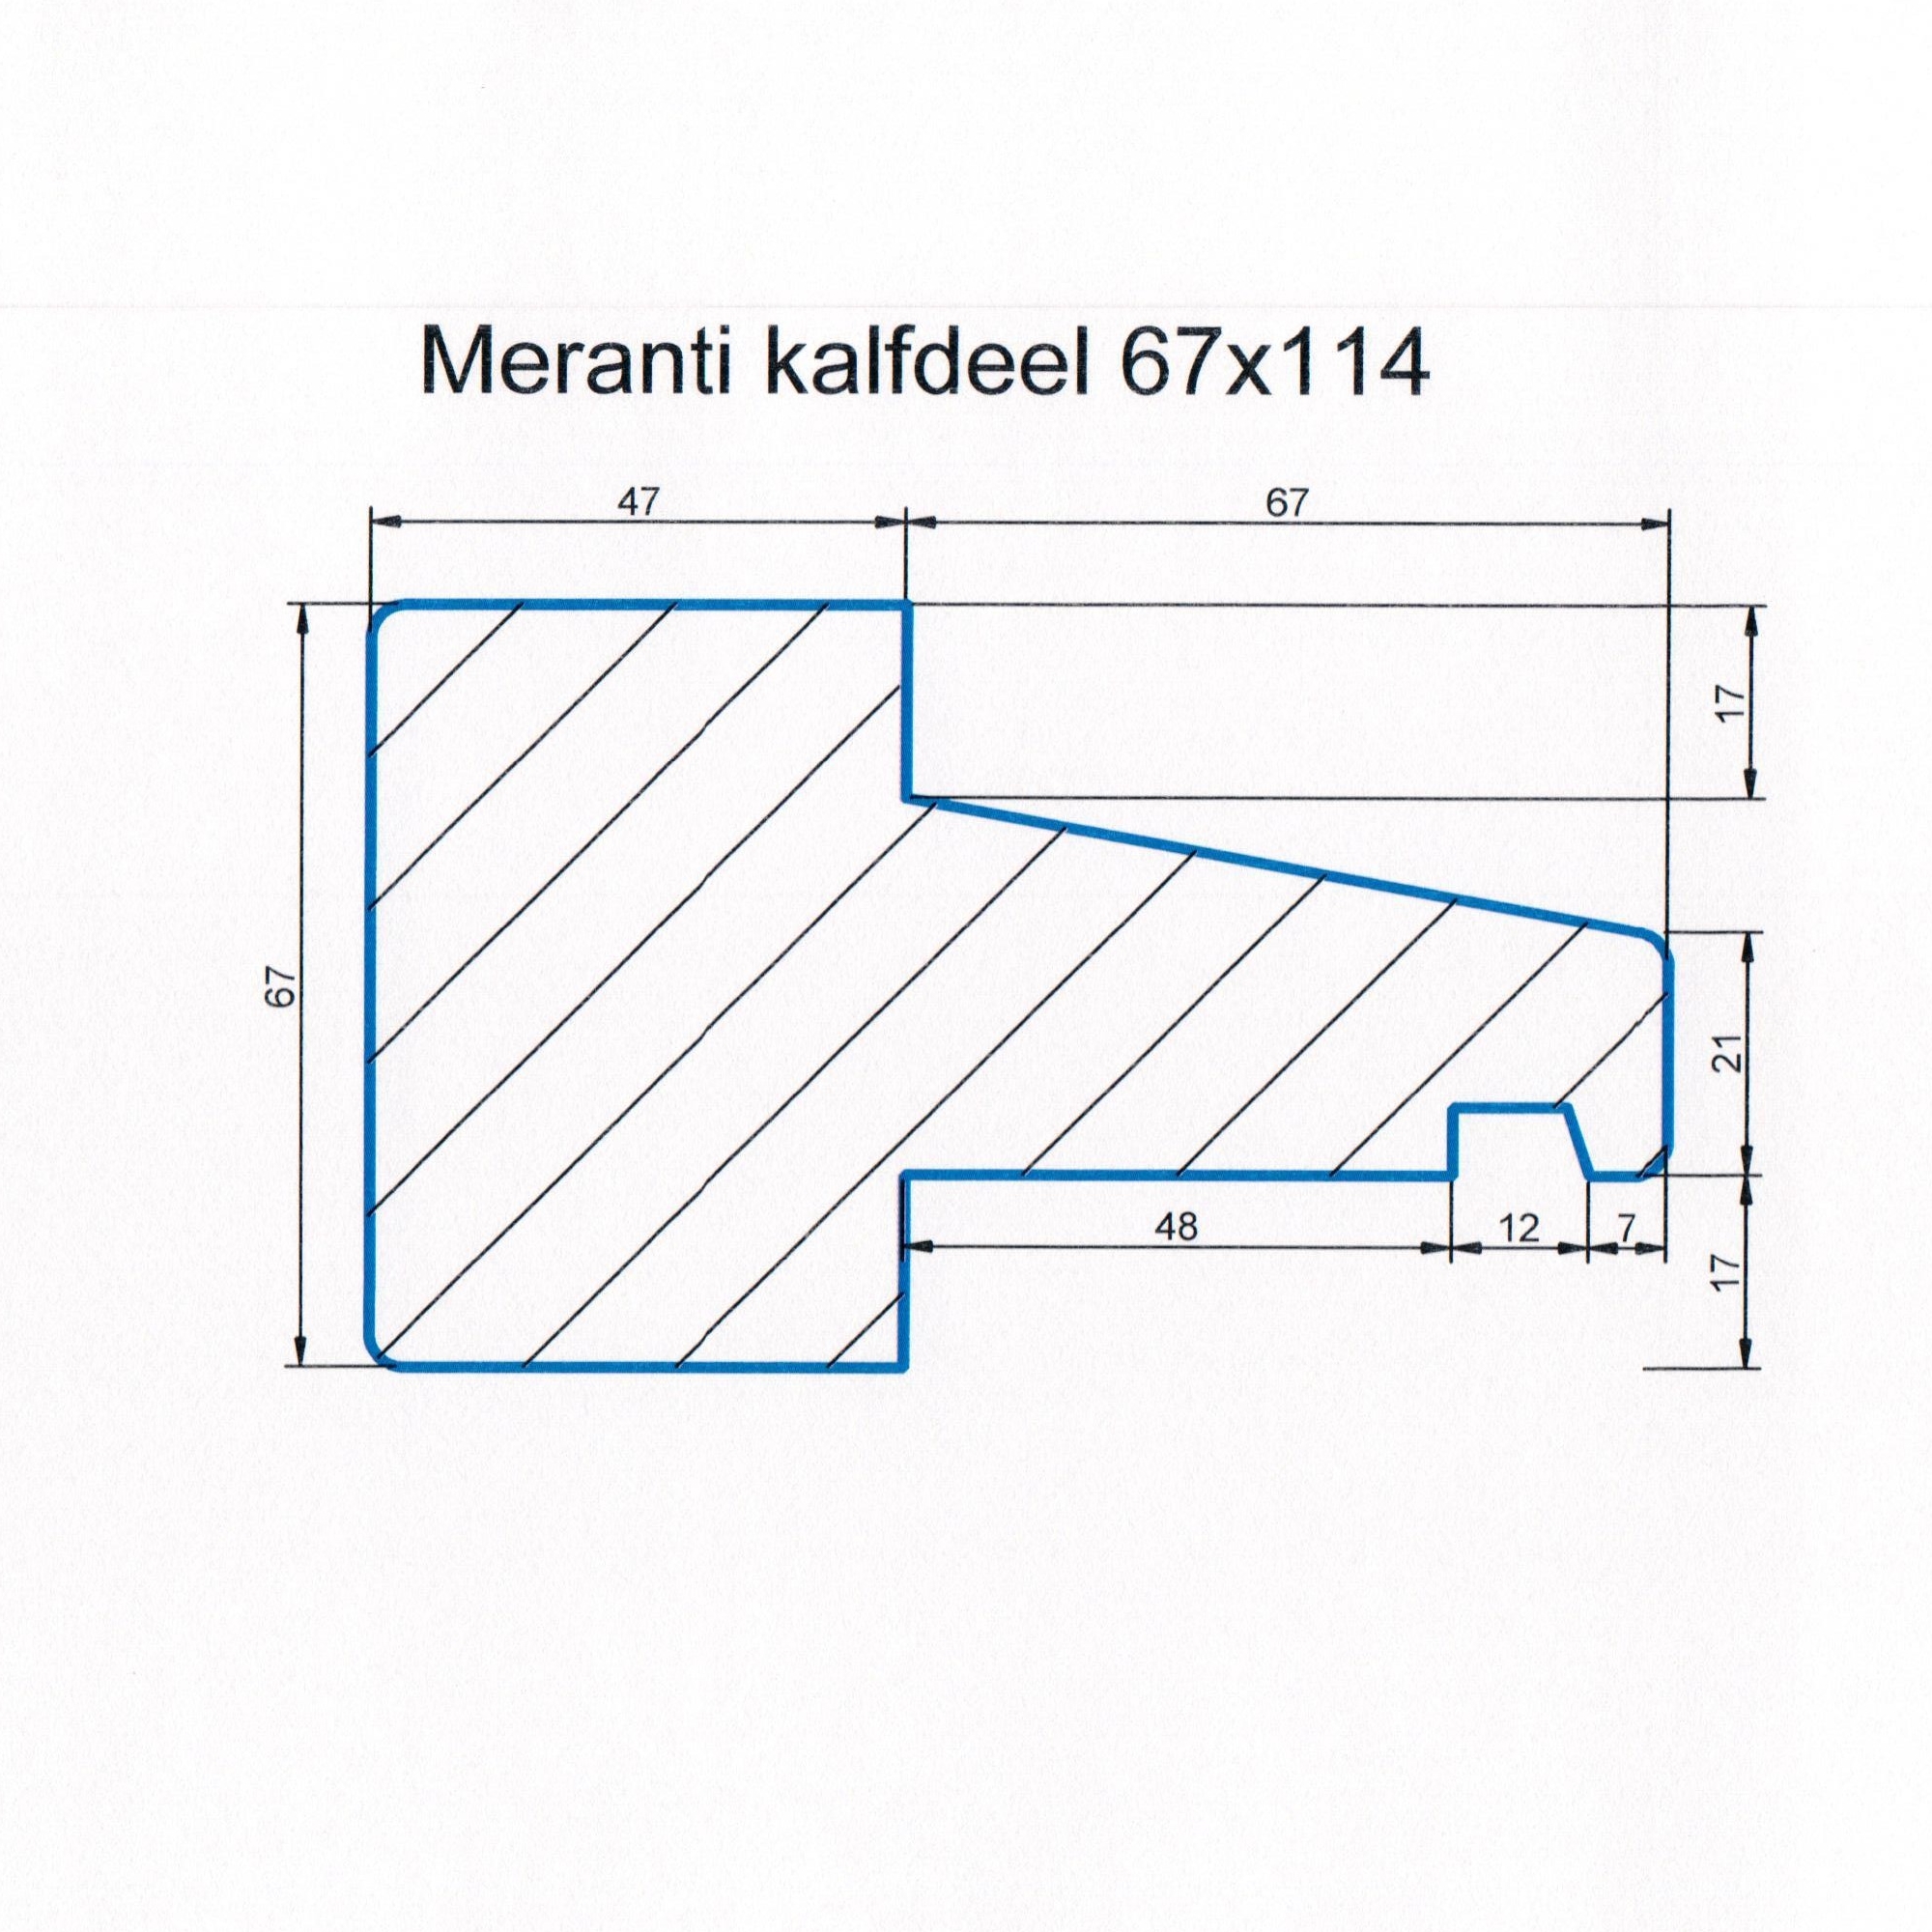 Meranti 67x114 kozijnhout Kalfdeel L=1500 mm